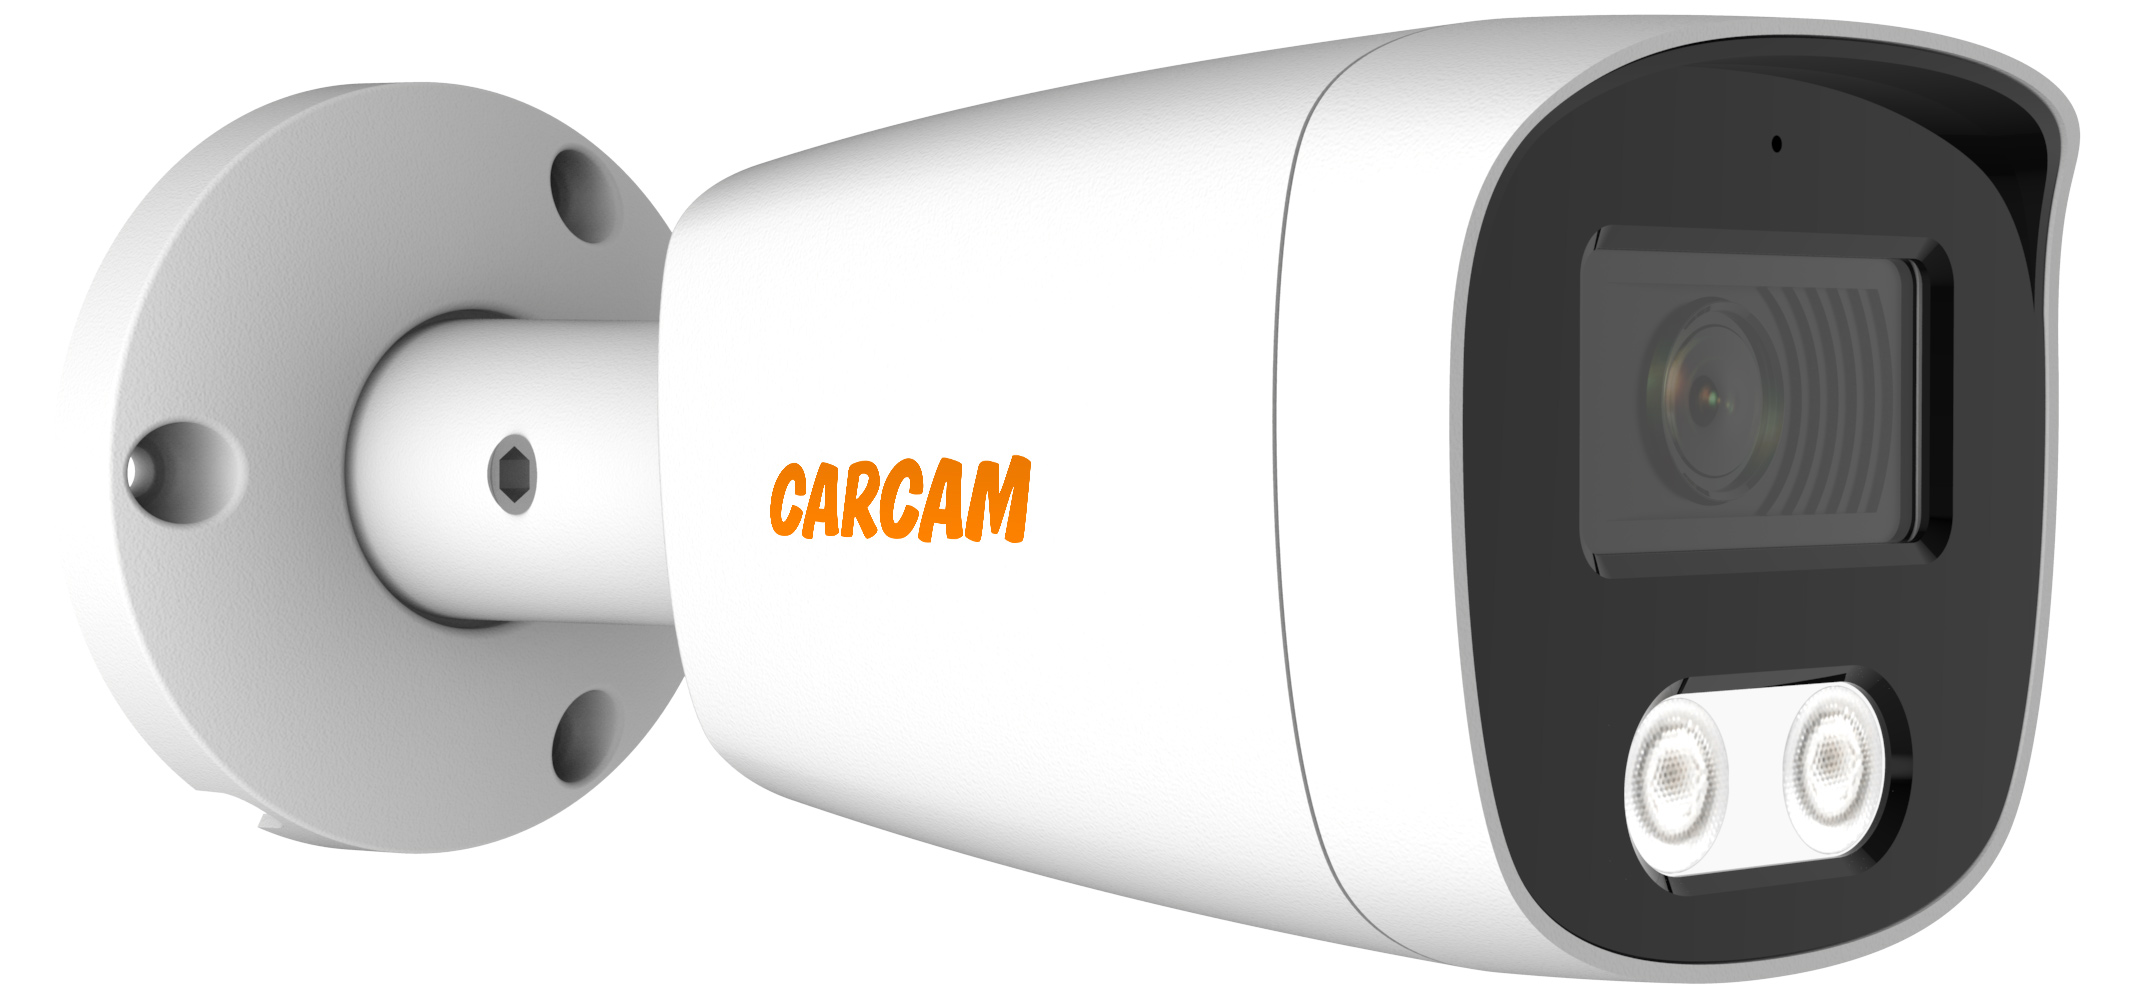 Цилиндрическая AHD камера CARCAM 5MP Bullet HD Camera 5145 камера видеонаблюдения carcam 2mp bullet ip camera 2177 2 8 12mm